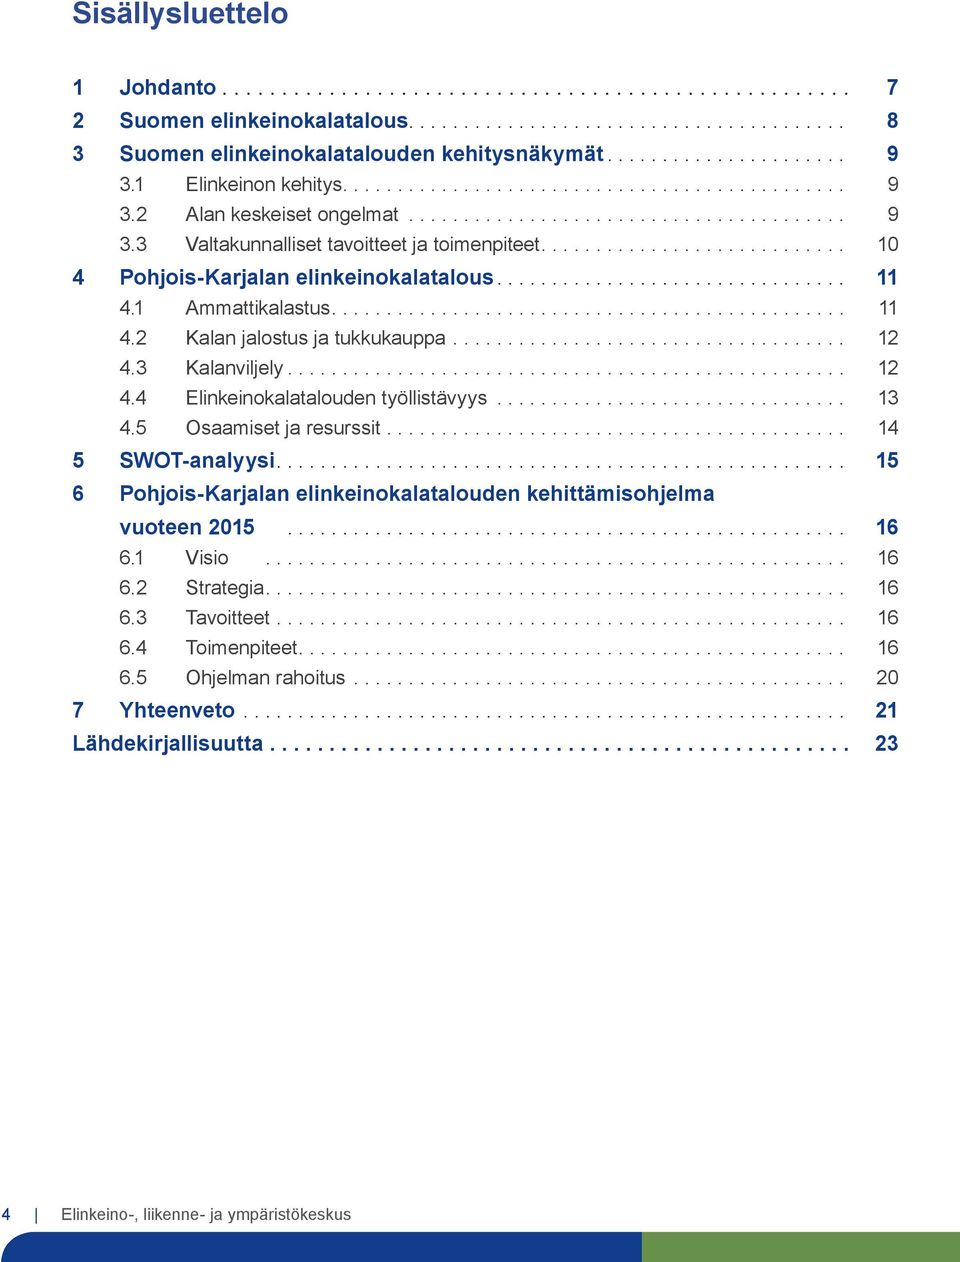 .. 13 4.5 Osaamiset ja resurssit... 14 5 SWOT-analyysi.... 15 6 Pohjois-Karjalan elinkeinokalatalouden kehittämisohjelma vuoteen 2015... 16 6.1 Visio... 16 6.2 Strategia.... 16 6.3 Tavoitteet.